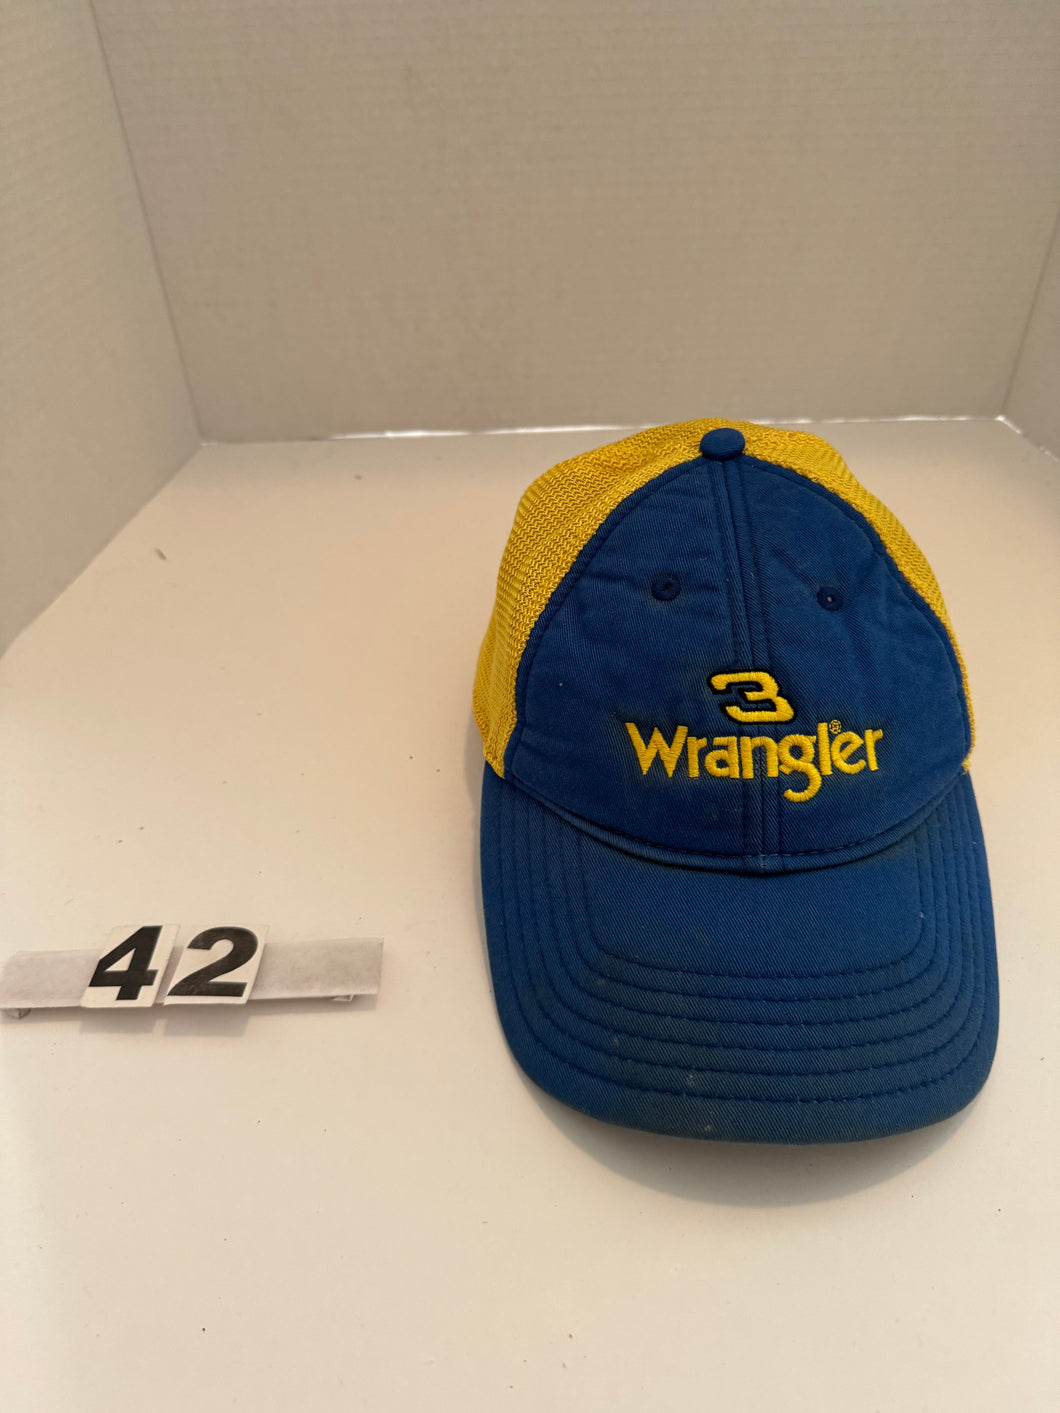 Wrangler Hat